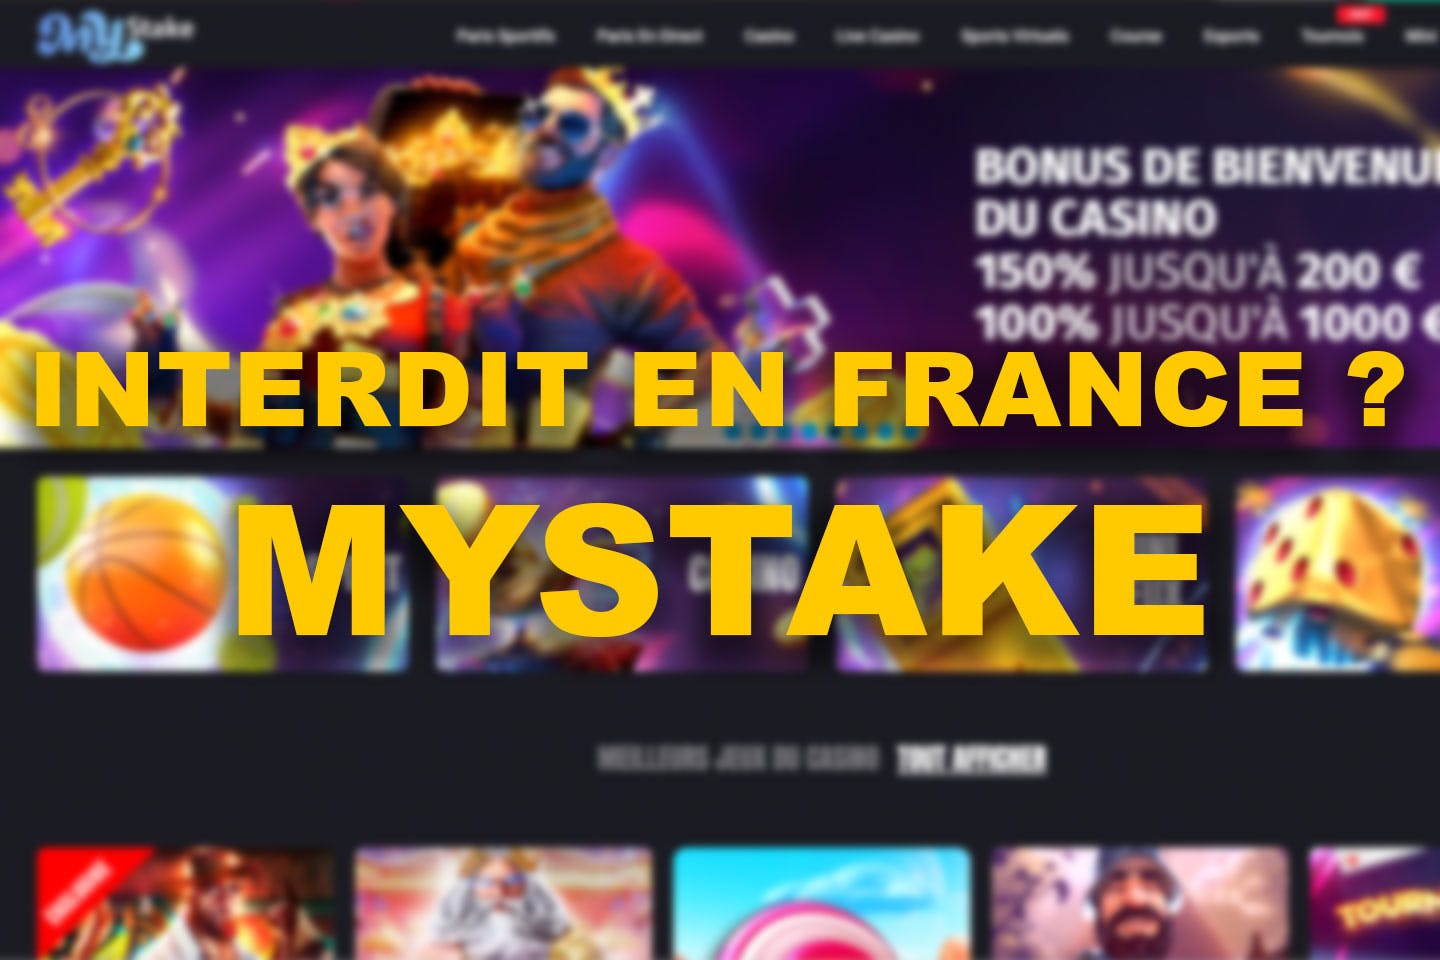 Mystake interdit en France ?